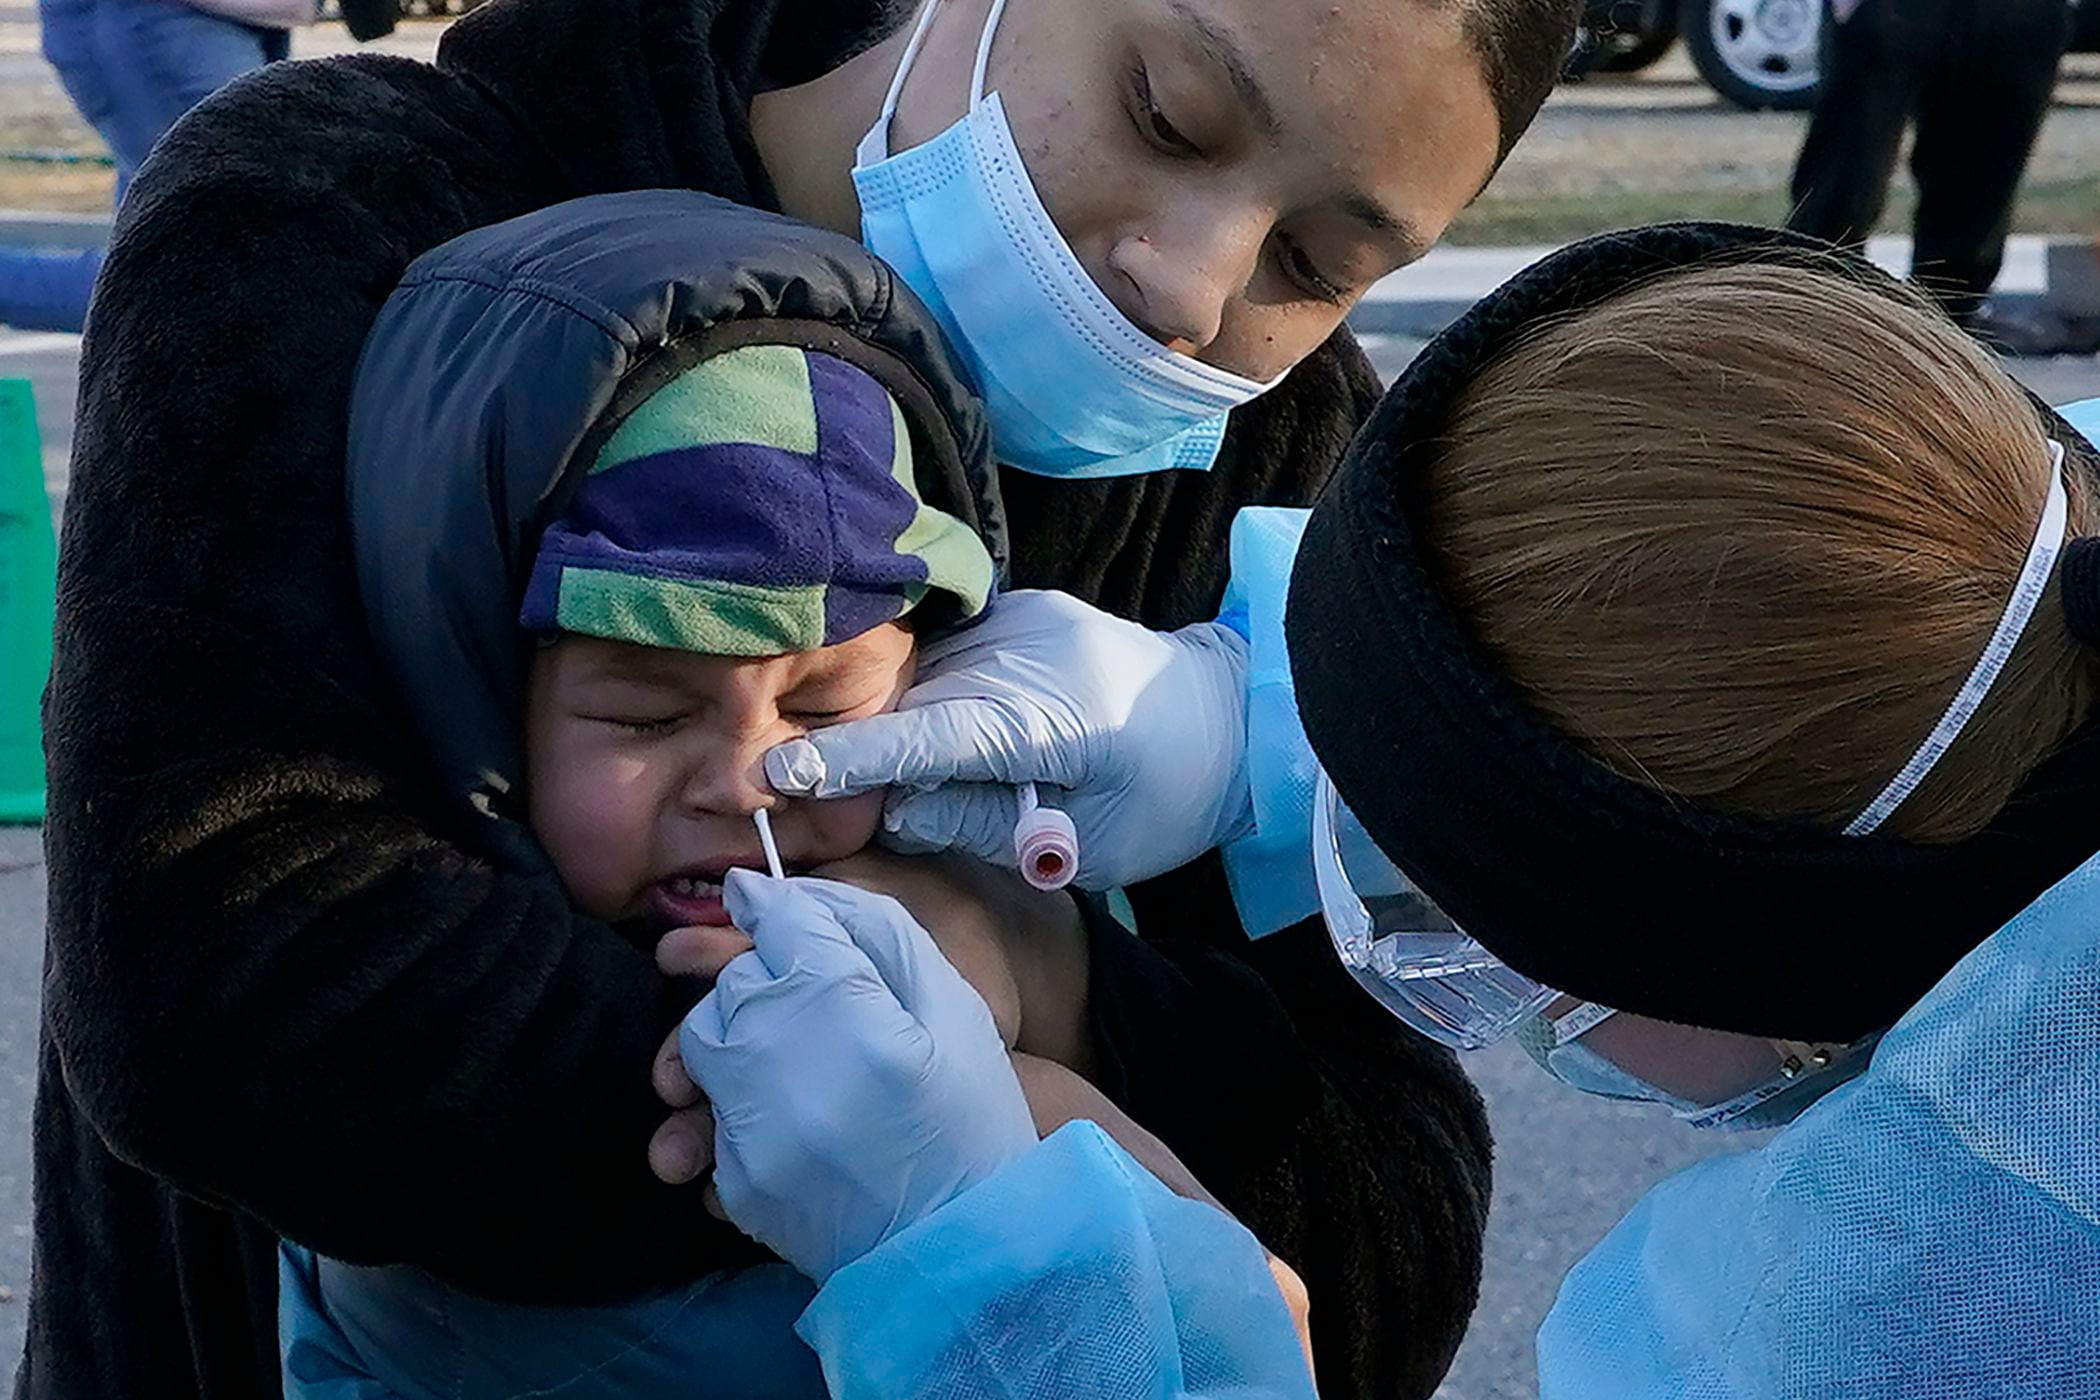 Jamillette Gomes sostiene a su hijo Avian, de 2 años, el 3 de diciembre de 2020 mientras le realizan la prueba del coronavirus, en Lawrence, Massachusetts. (AP Foto/Elise Amendola, archivo)